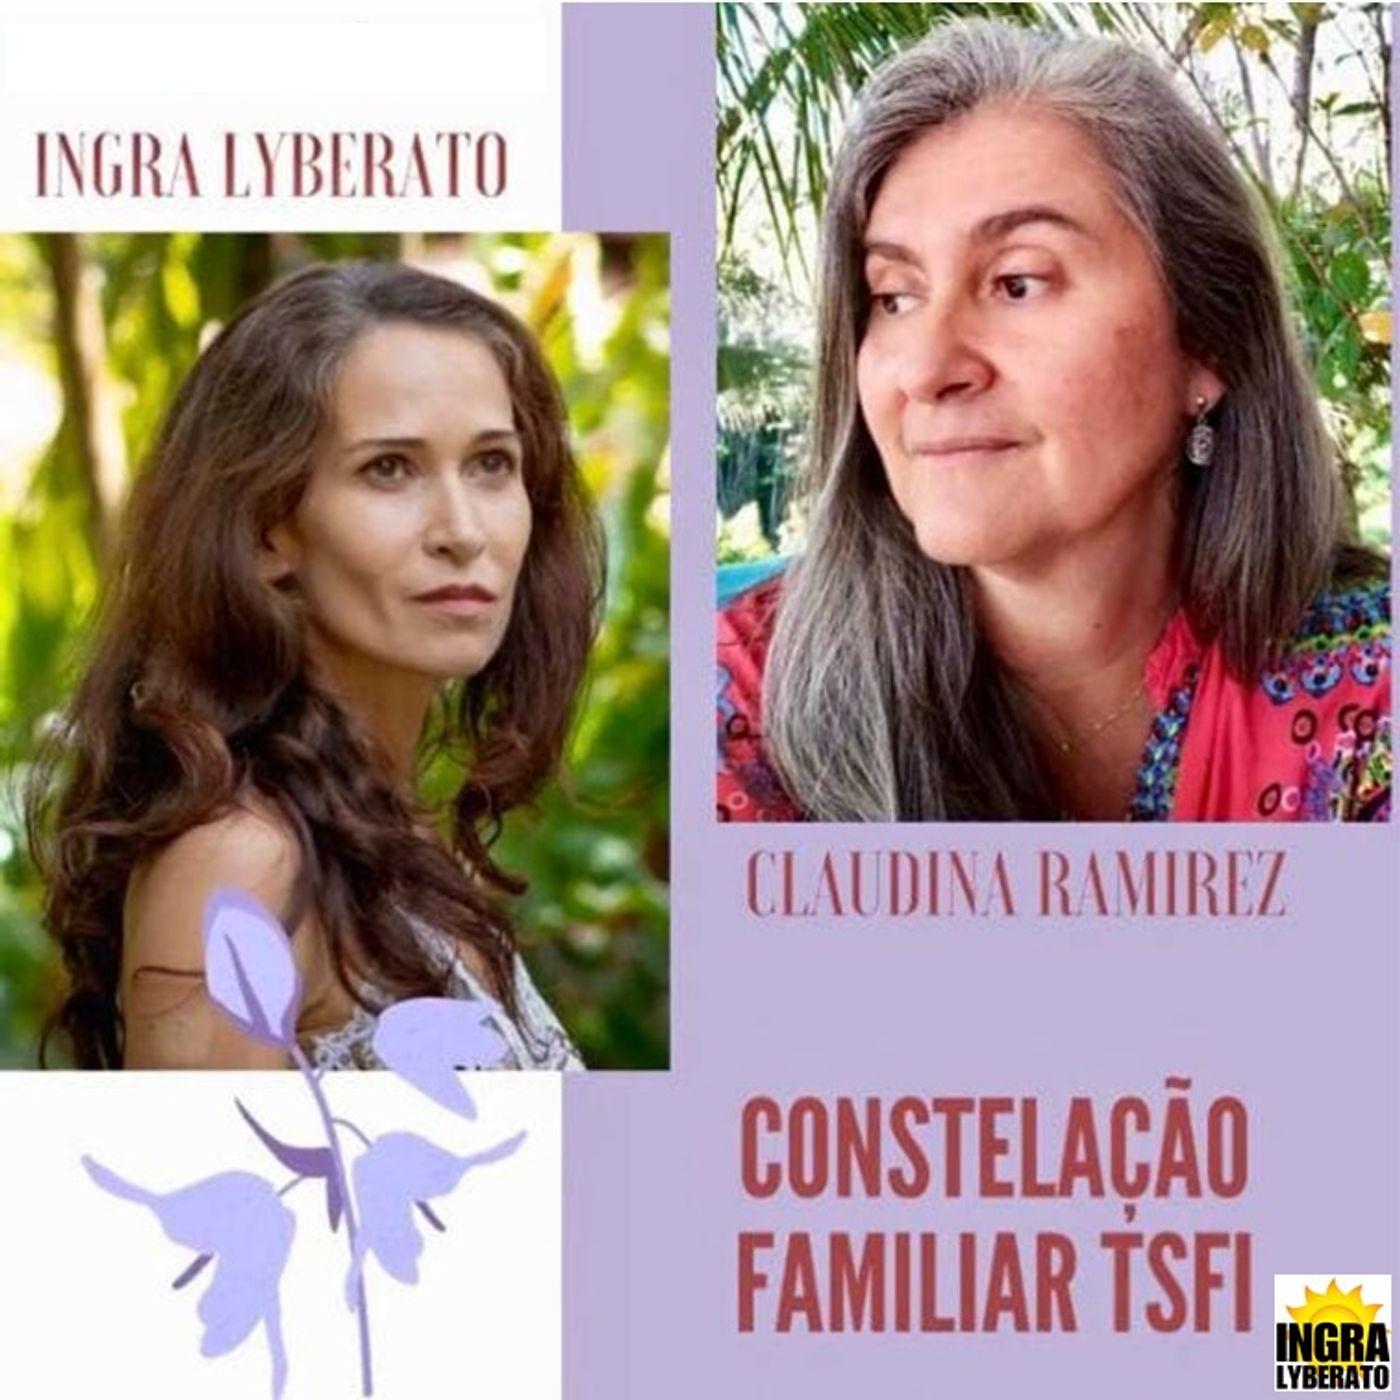 Podcast Os caminhos da Alma - Constelação Familiar TSFI com Ingra Lyberato e Claudina Ramirez